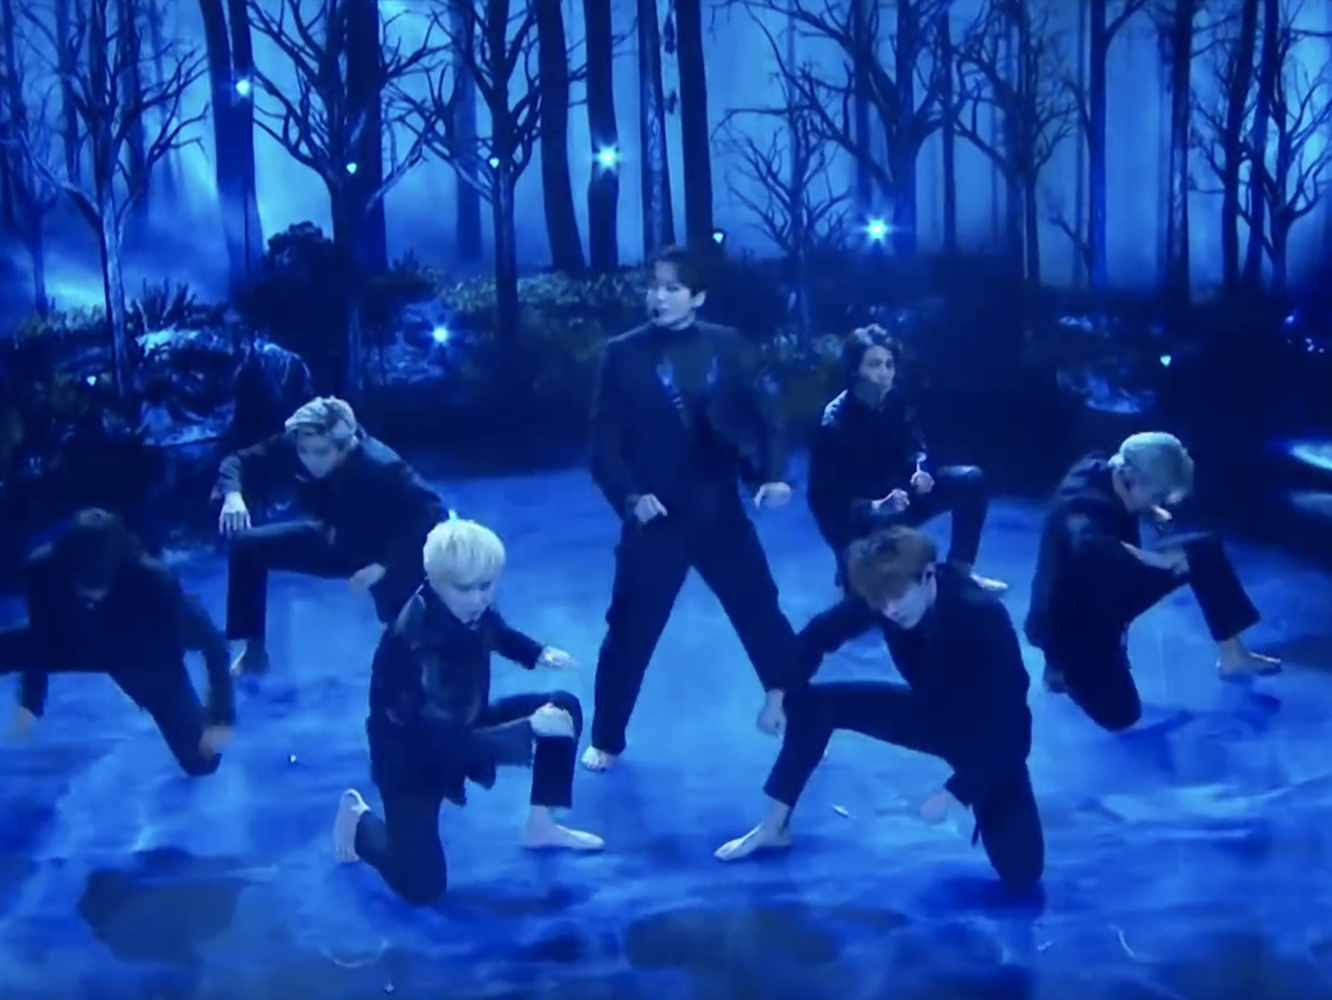  Rollito muy broadway eurovisible para el ‘Black Swan’ de BTS en el show de Corden